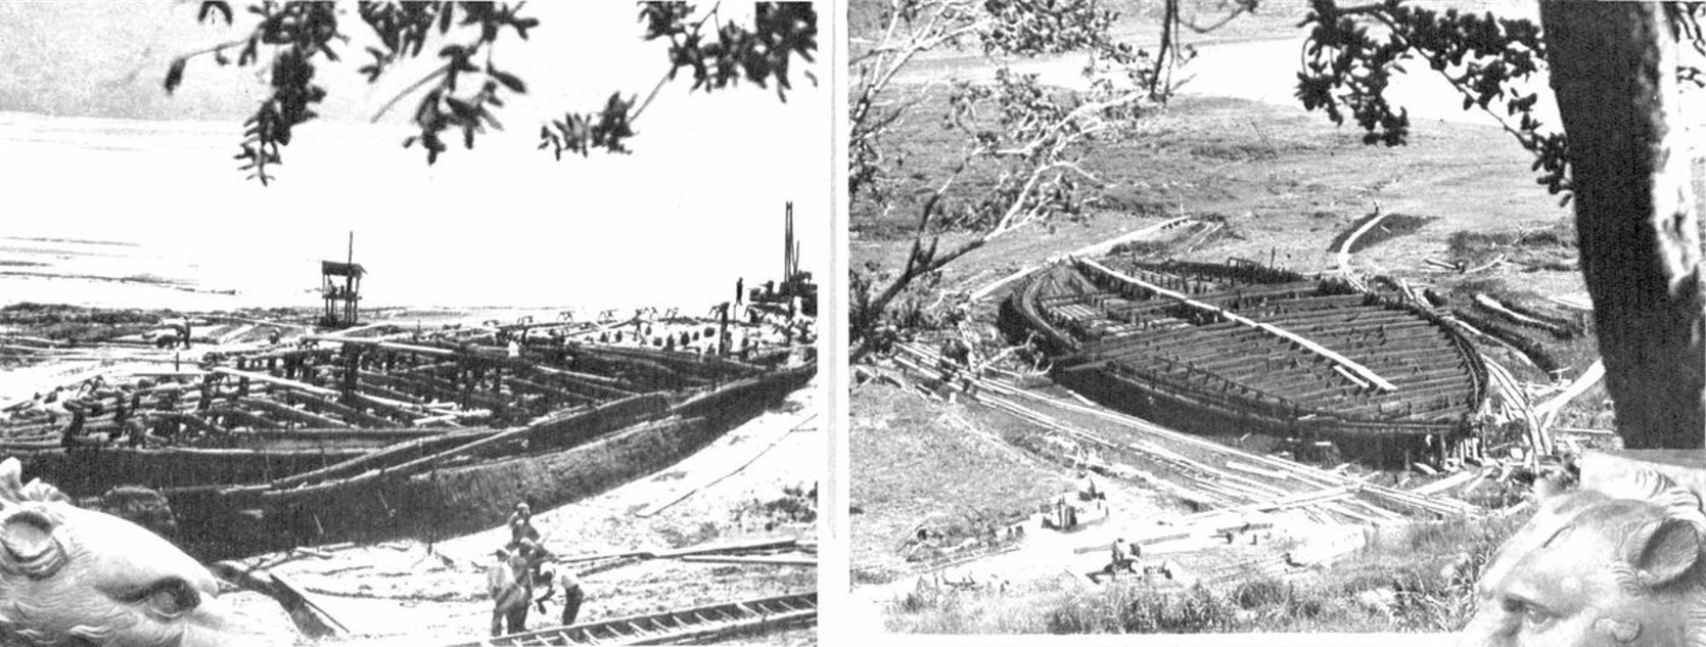 Imagen de los barcos de Calígula durante su excavación. Recorte de prensa de un periódico de 1932.